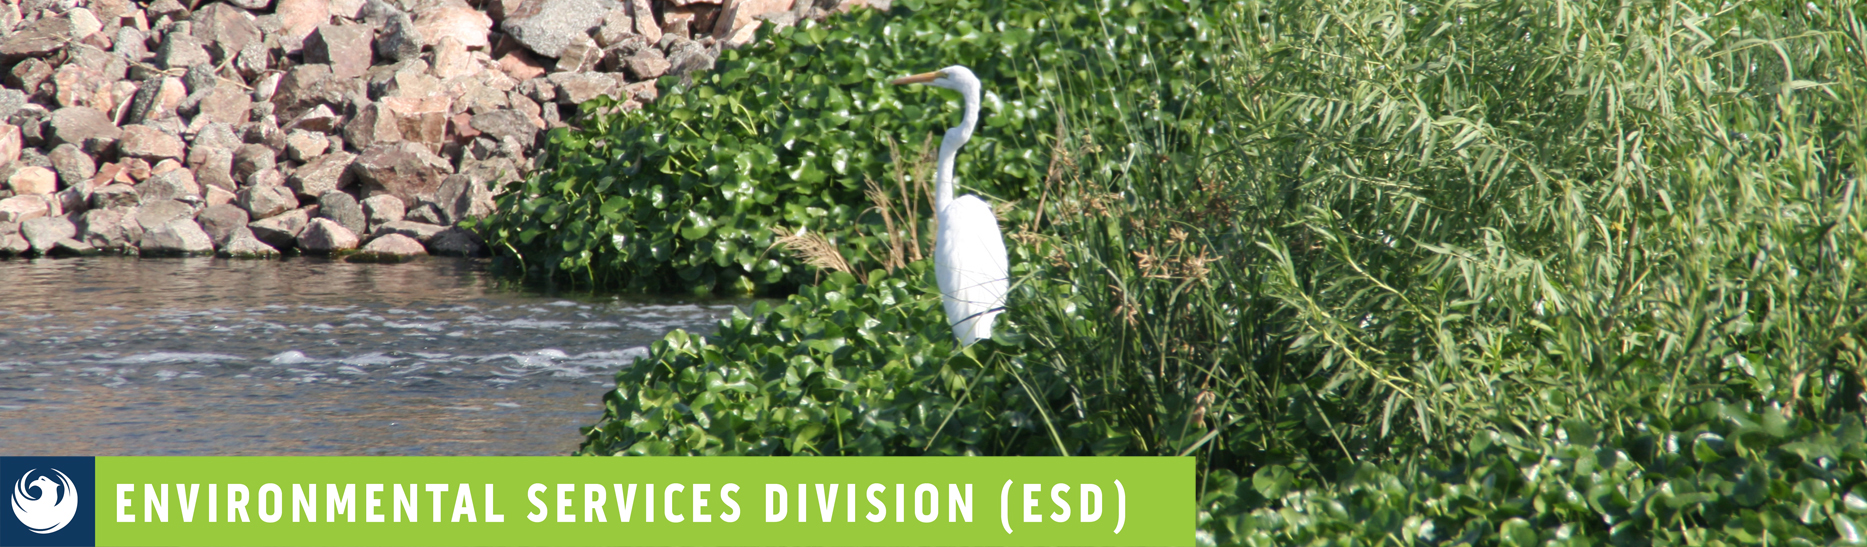 Bird at Tres Rios -Banner for Environmental Services Division 